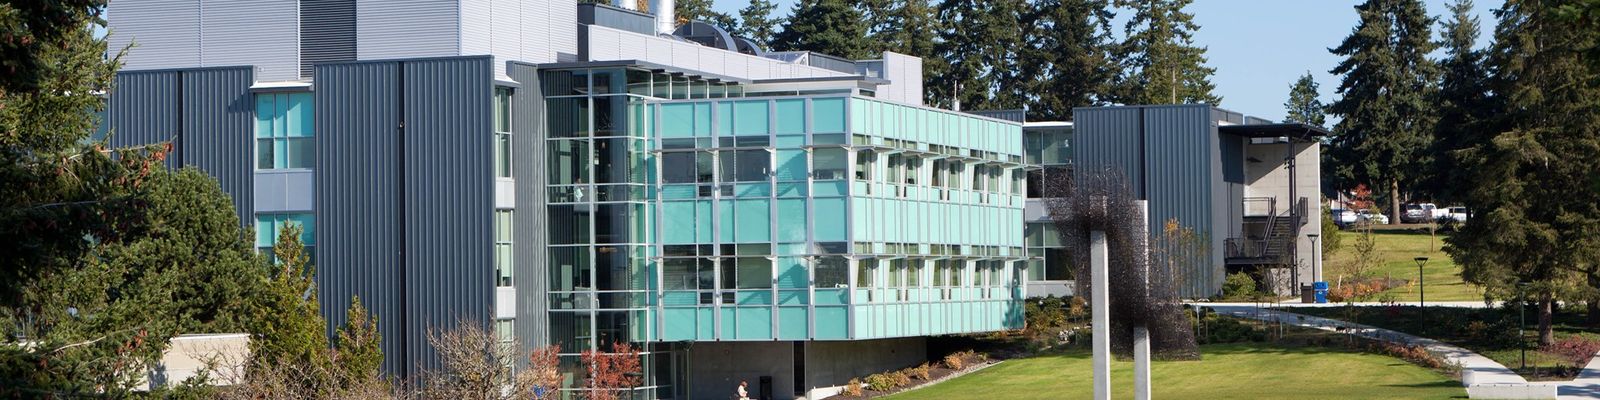 Bellevue College S Building